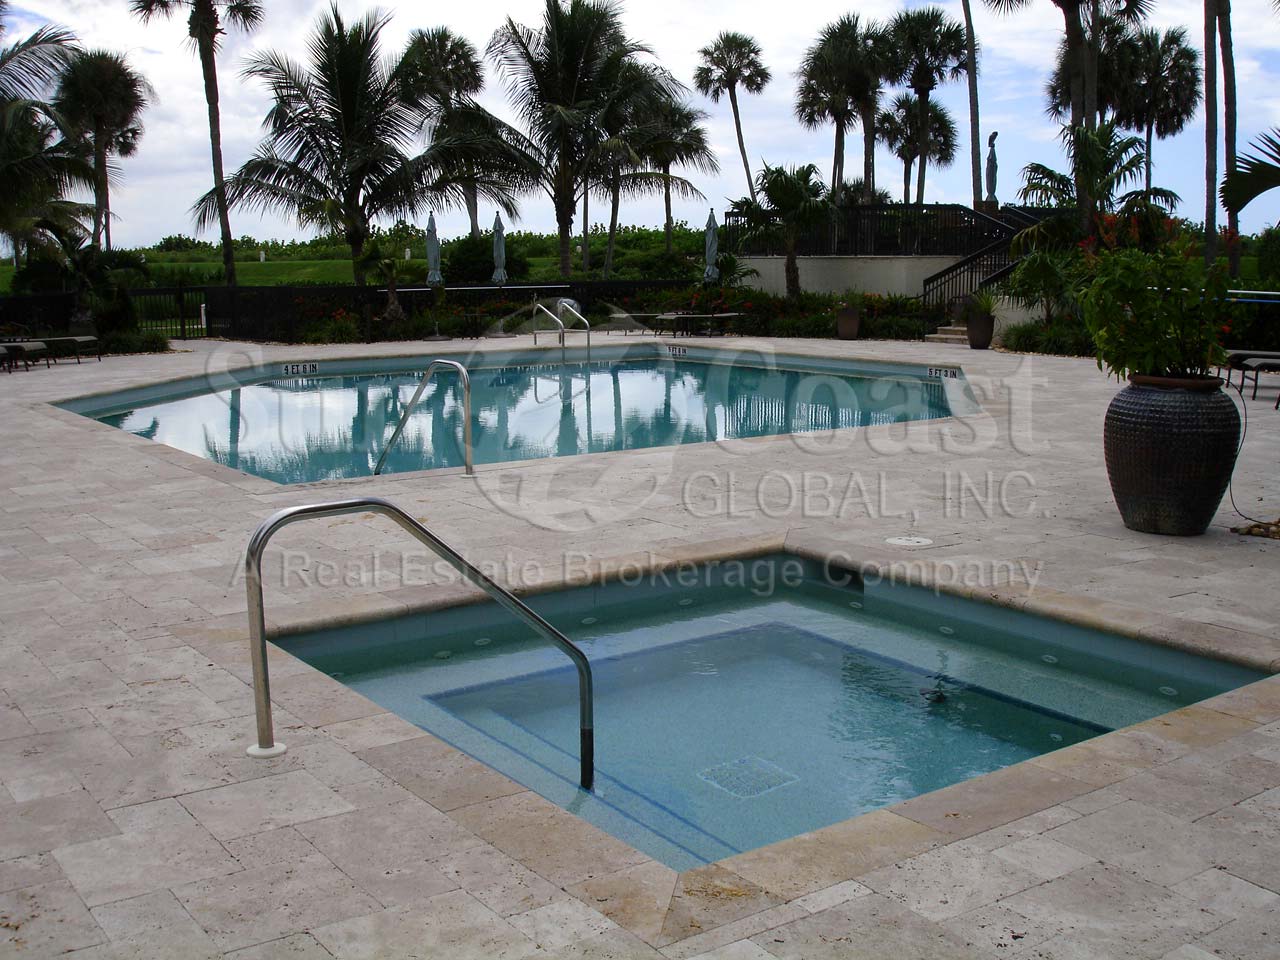 Esplanade Club Community Pool and Hot Tub 